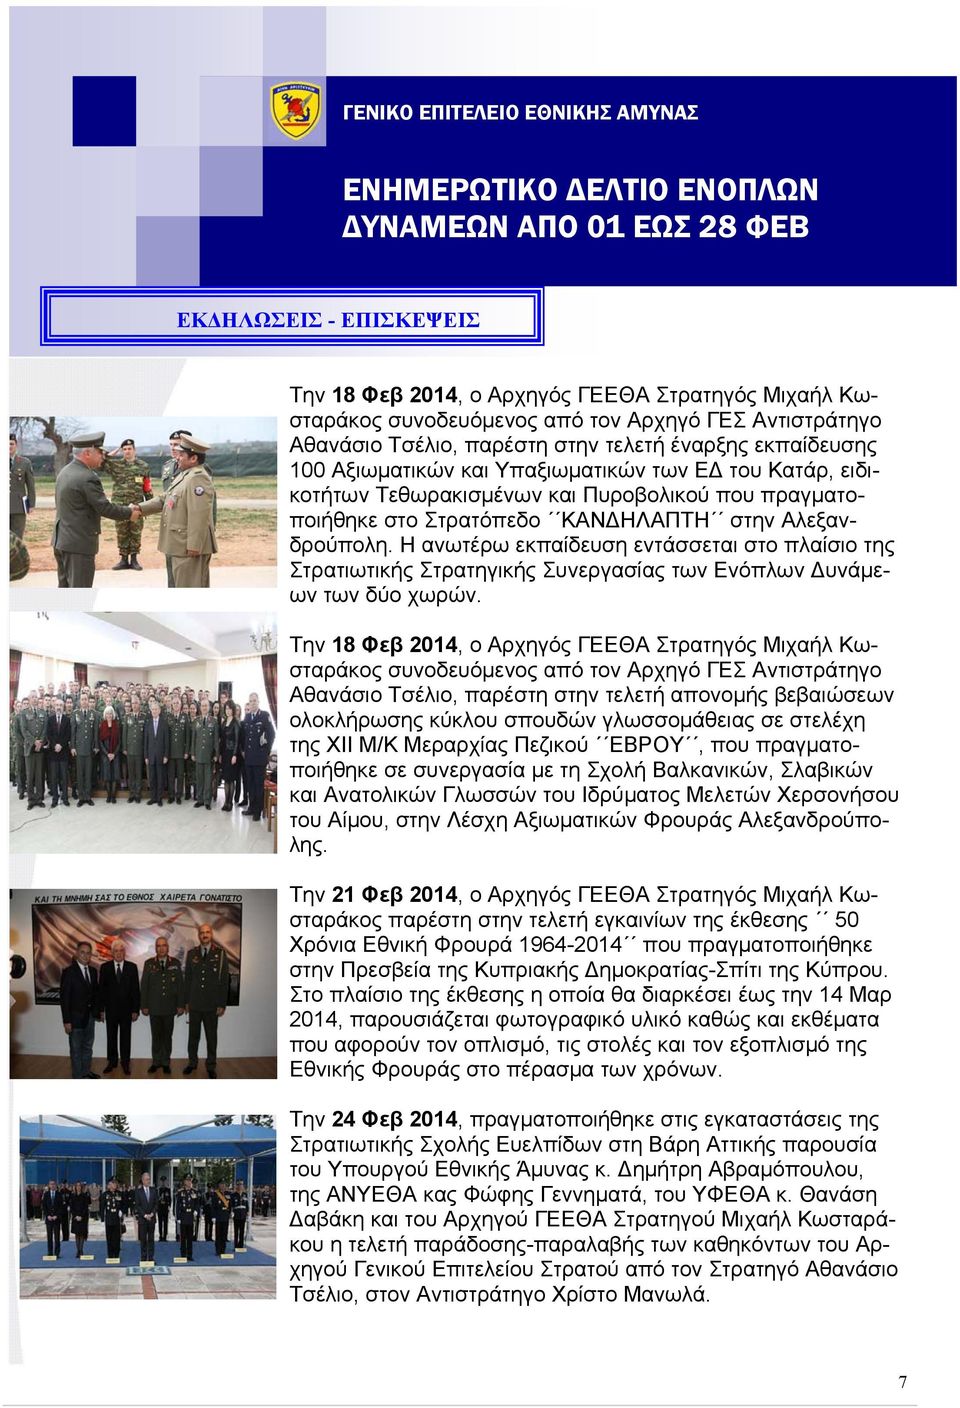 Η ανωτέρω εκπαίδευση εντάσσεται στο πλαίσιο της Στρατιωτικής Στρατηγικής Συνεργασίας των Ενόπλων υνάμεων των δύο χωρών.